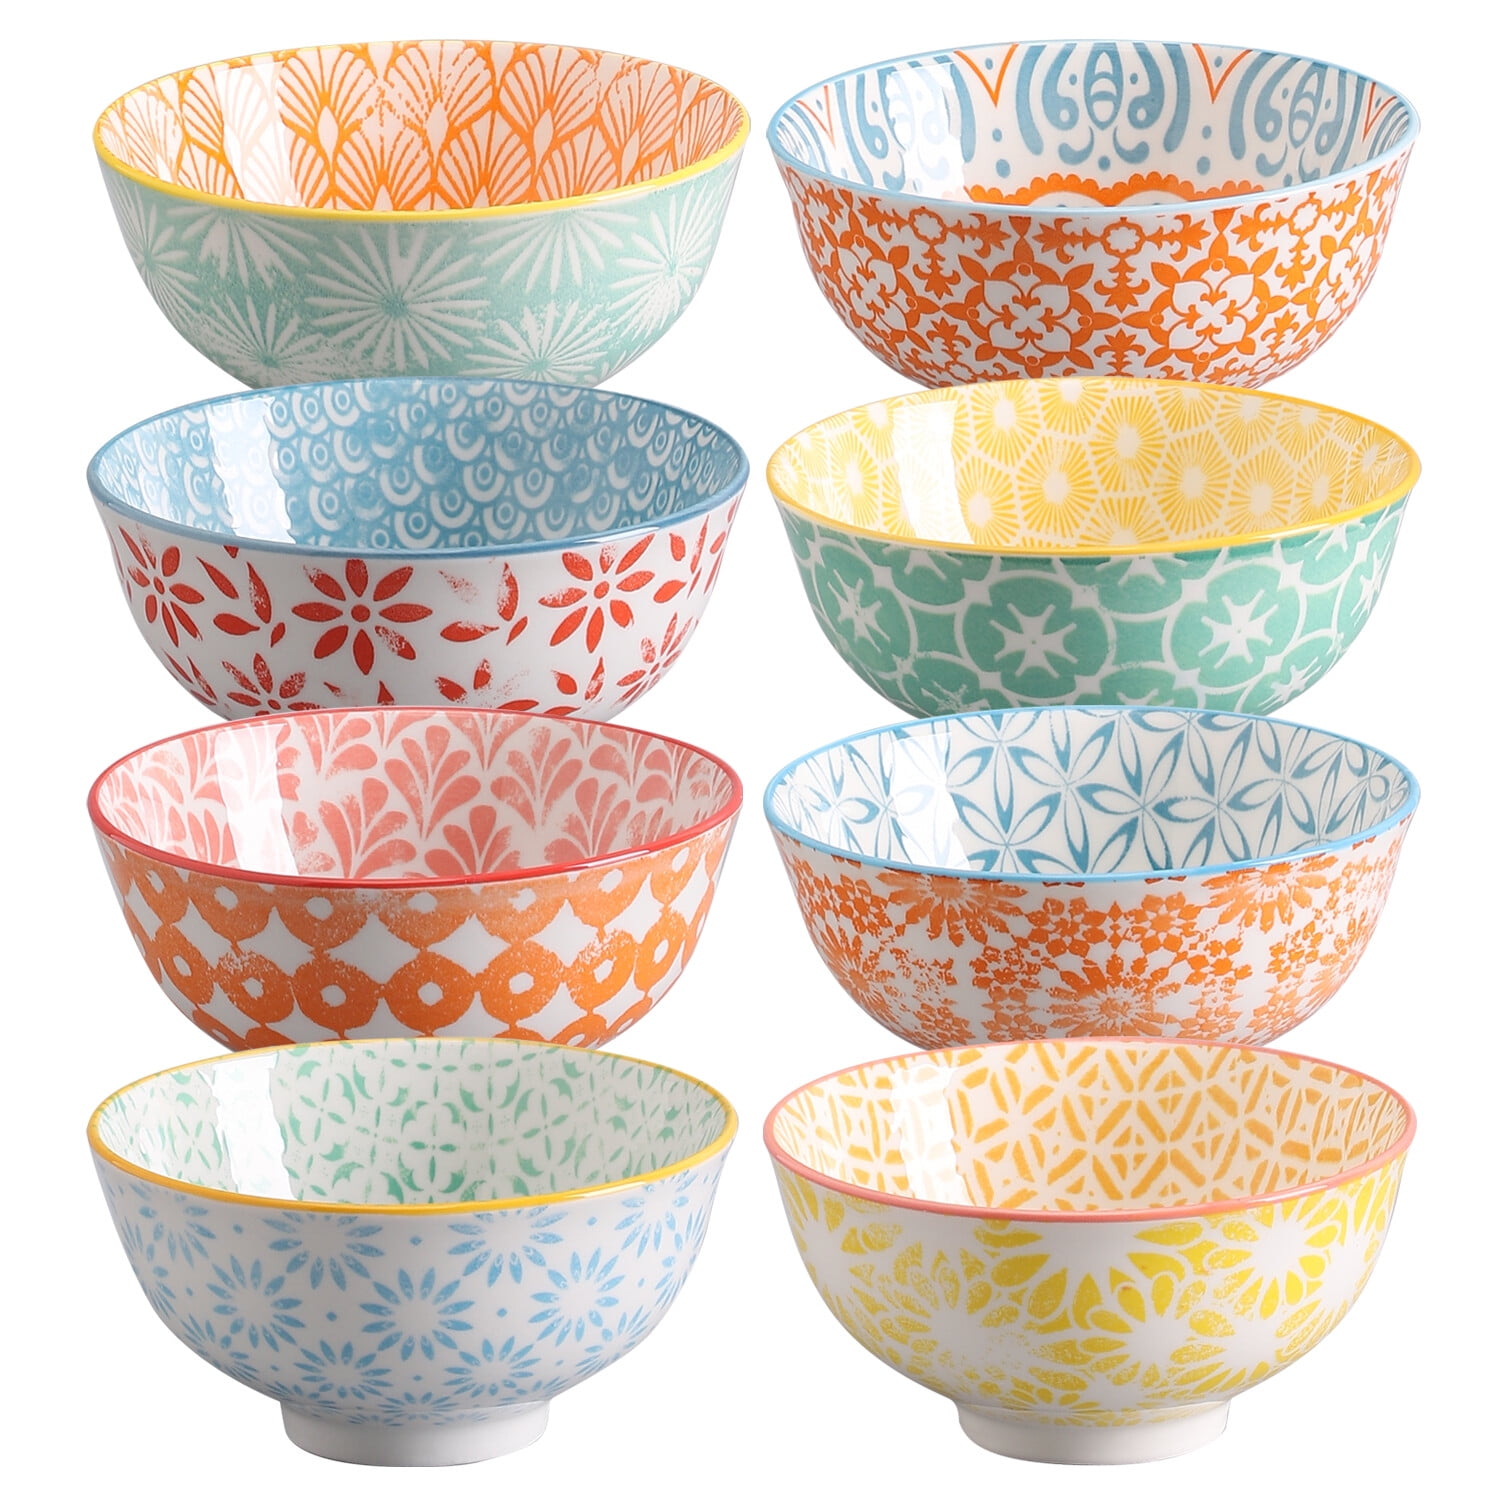 Yesland 2 Pack Porcelain Angled Serving Bowls - 26 oz White Salad Bowls -  Ceramic Pasta Bowls for Cereal, Soup, Salad, Rice, Prep